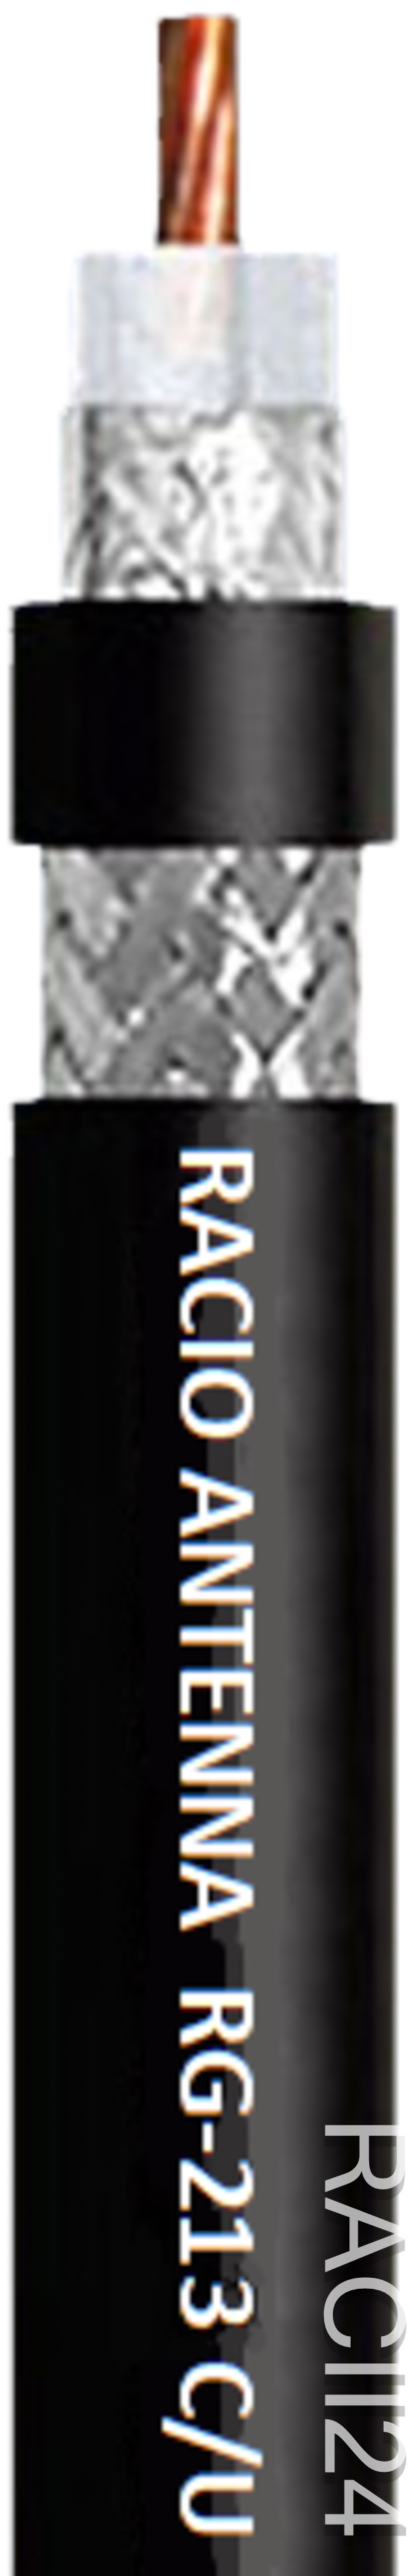 Кабель коаксиальный Racio Antenna RG-213 C/U в магазине RACII24.RU, фото